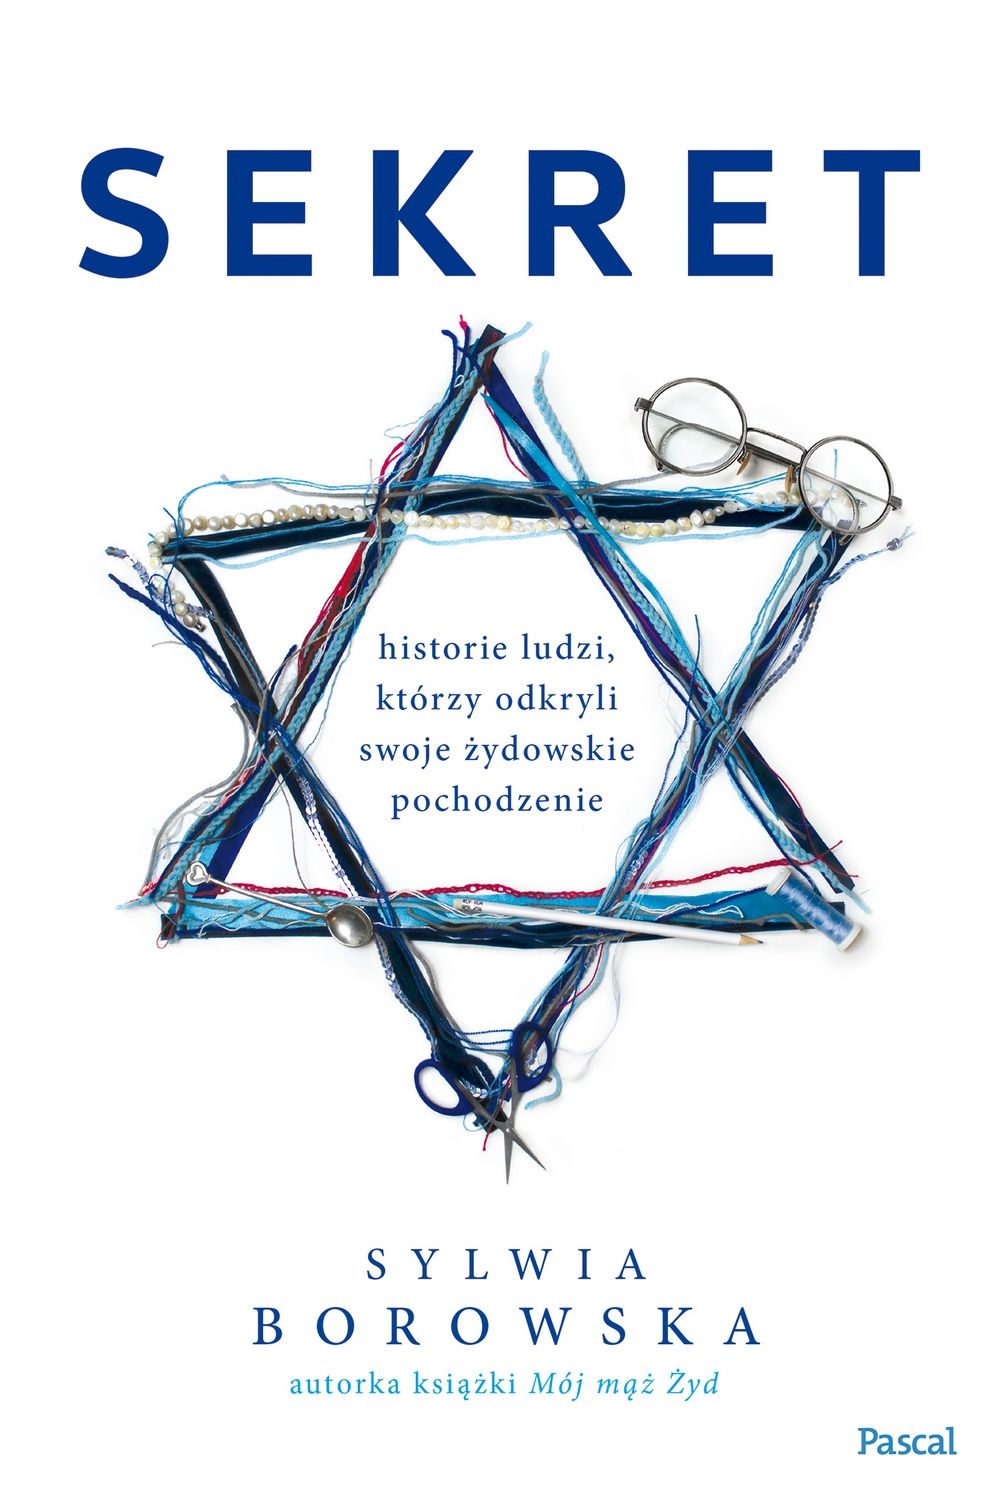 Sekret Historie Polaków, którzy odkryli żydowskie pochodzenie